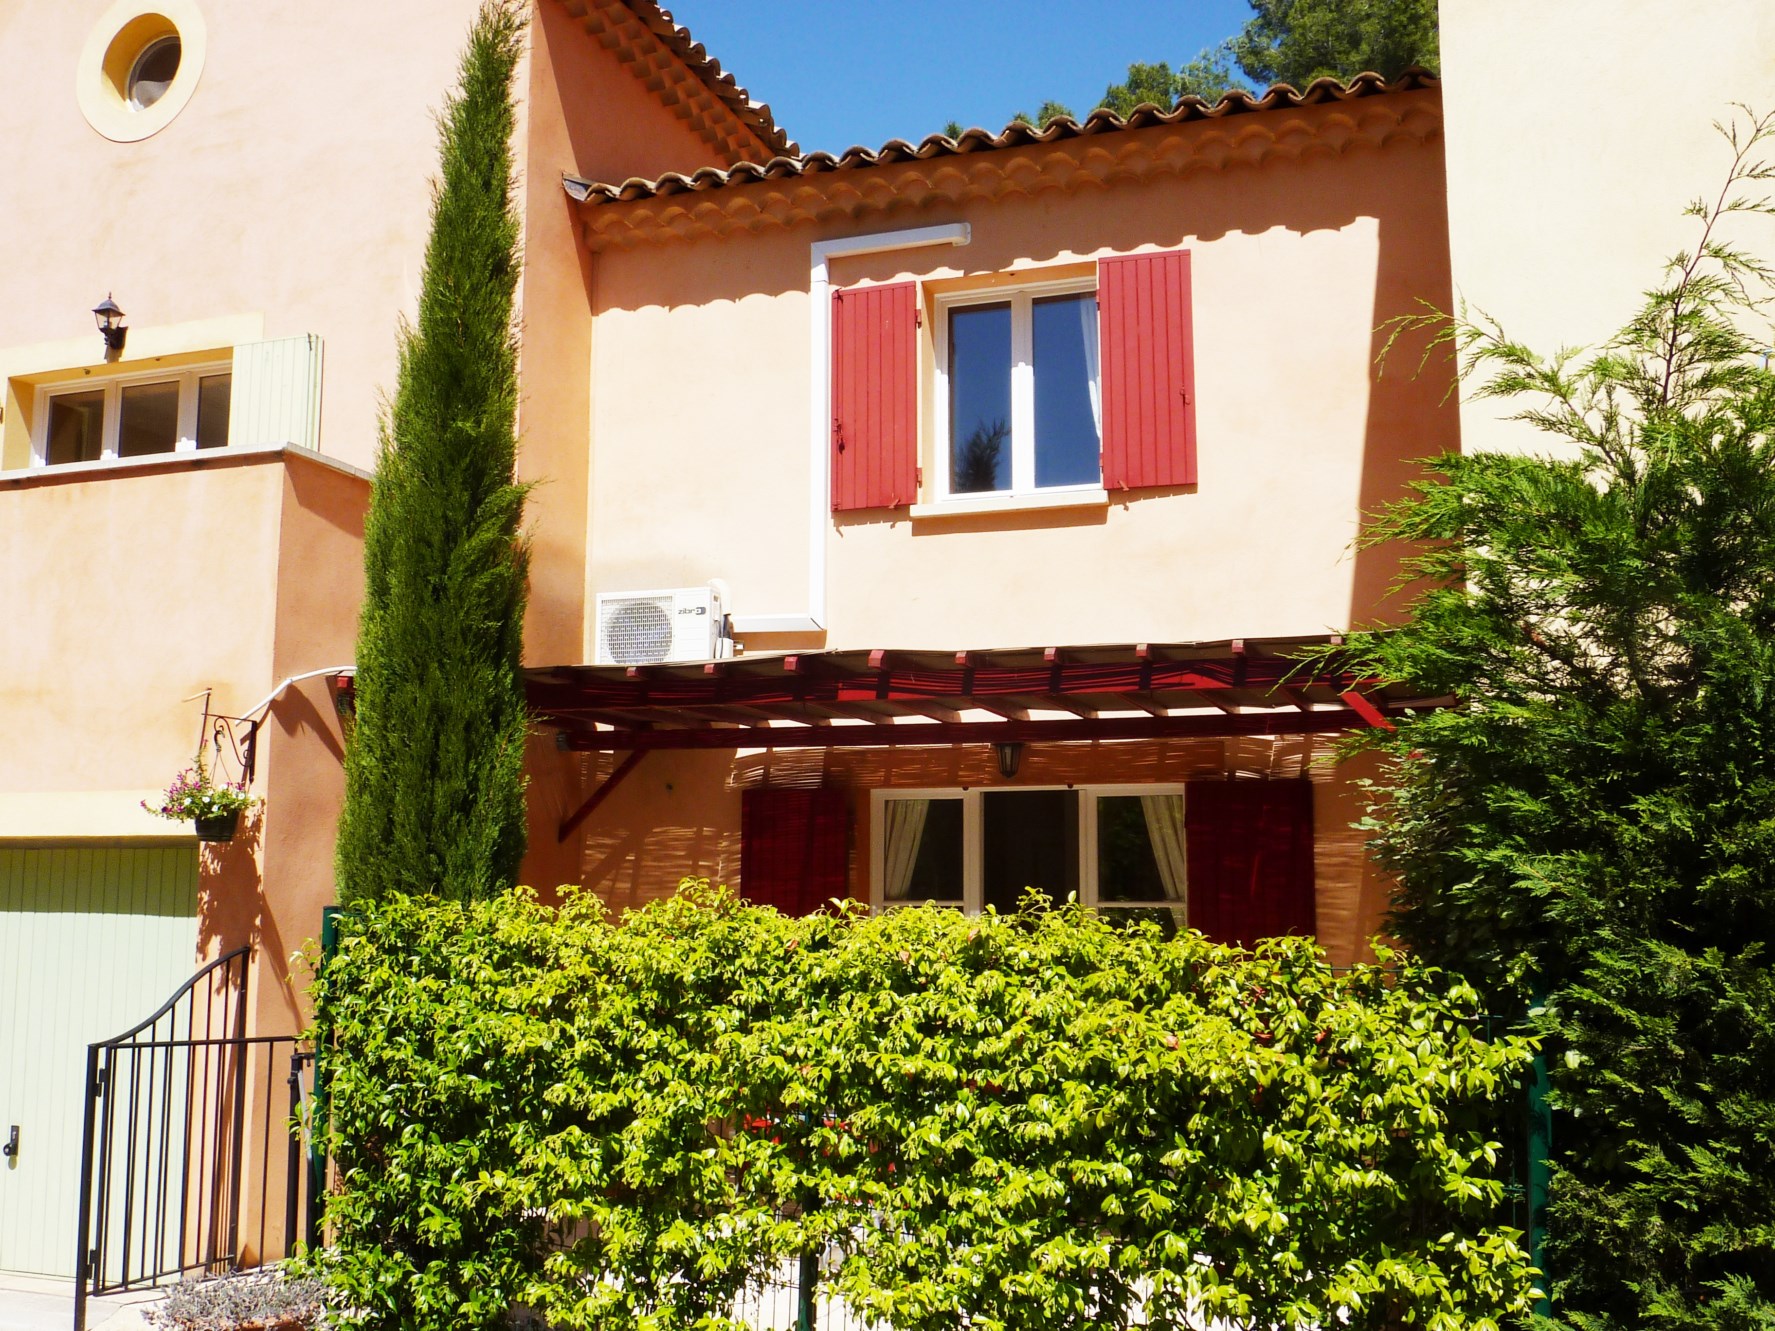 Vente En Luberon, maison charmante avec terrasse couverte et garage dans petite copropriété 